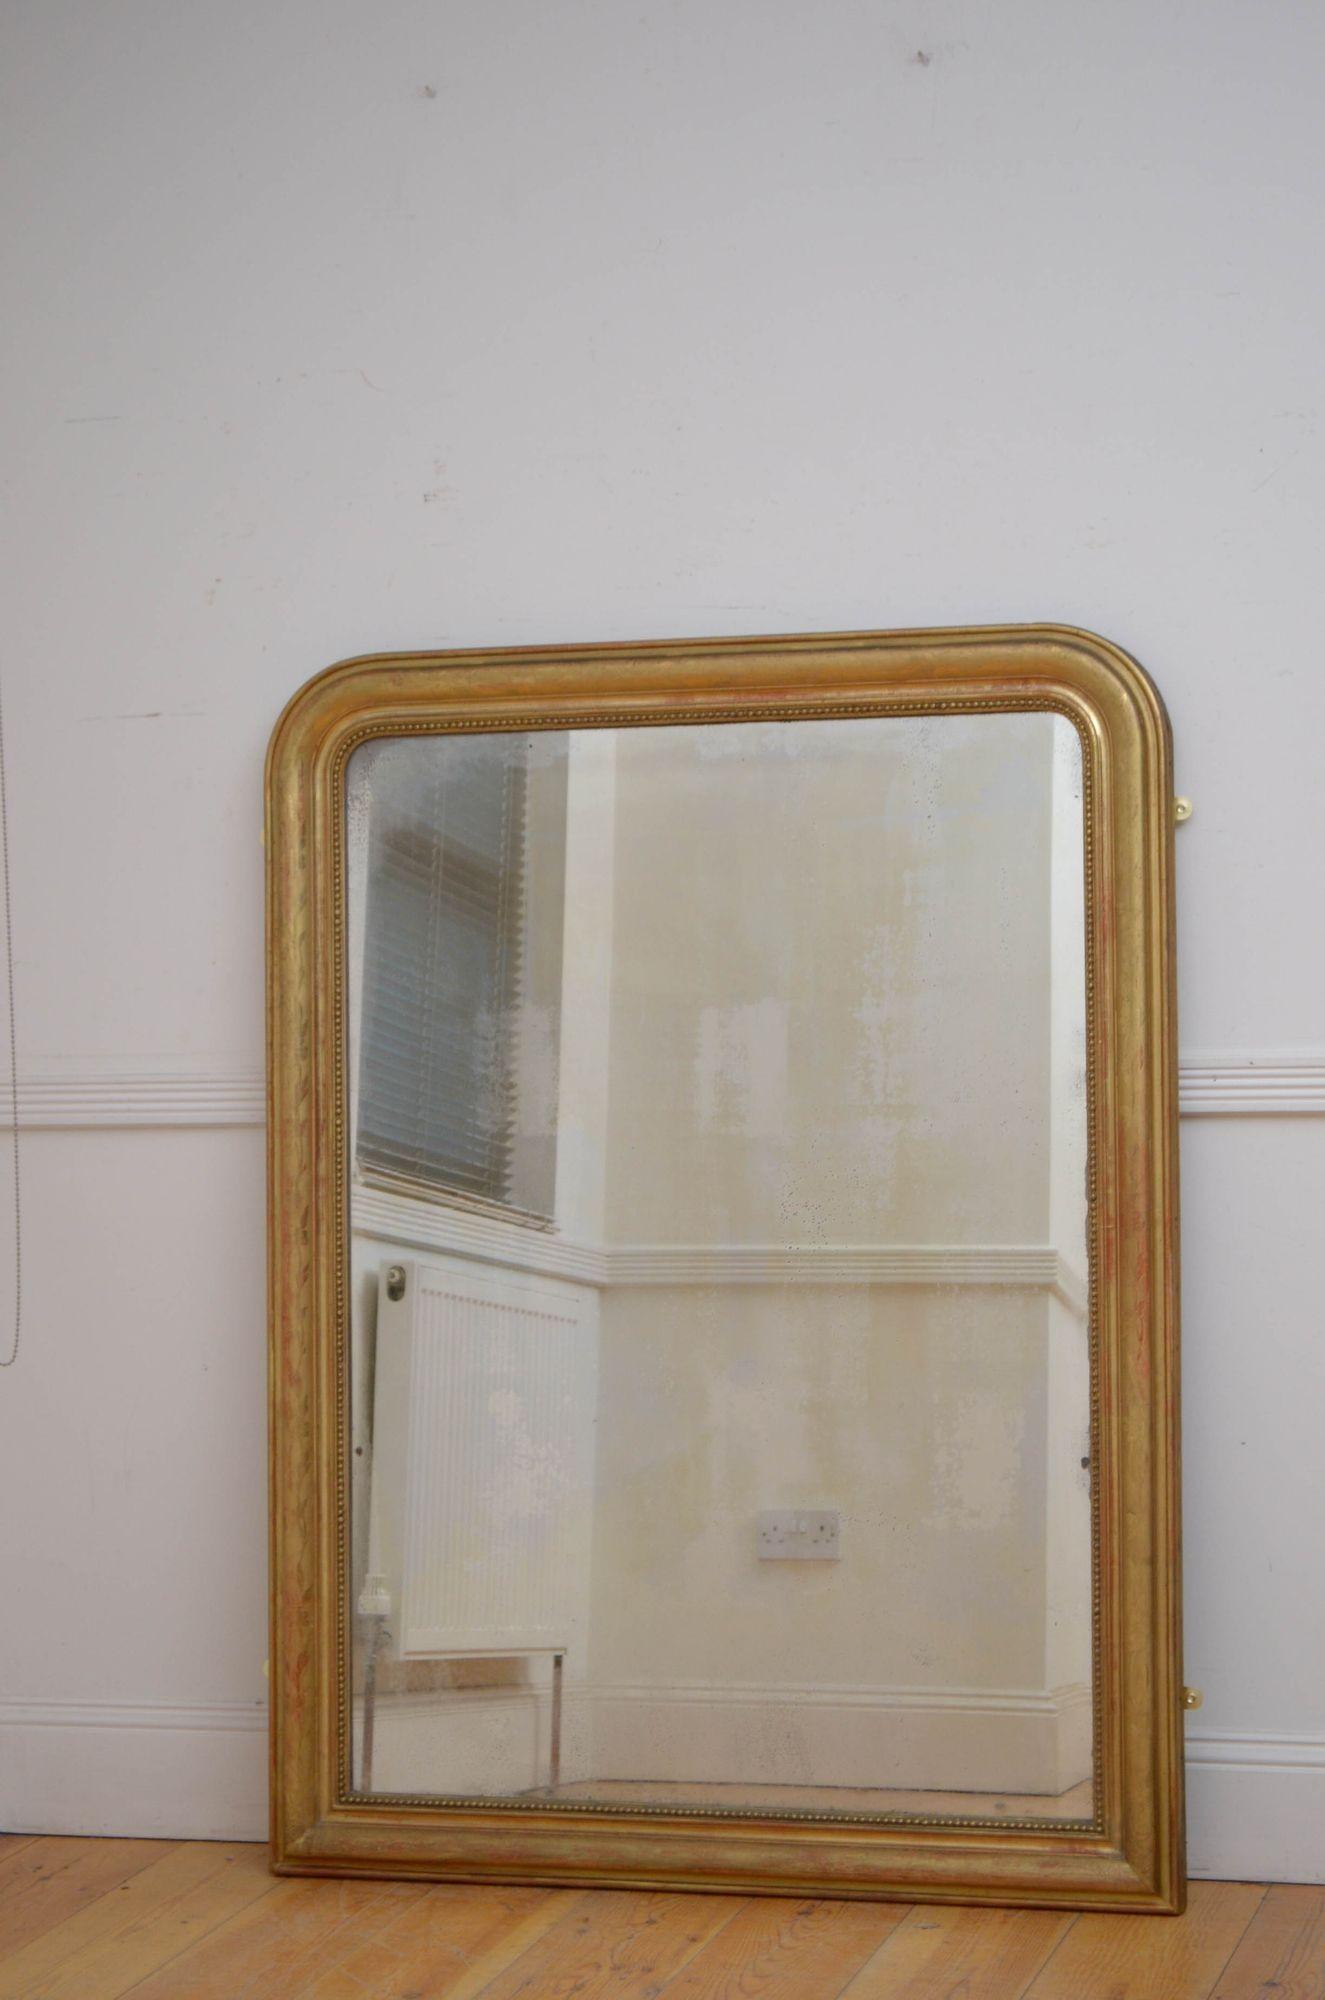 Sn5477 Attrayant miroir mural ou miroir à poser du XIXe siècle, avec verre d'origine présentant quelques imperfections, dans un cadre perlé et mouluré avec une décoration florale sur l'ensemble du cadre. Ce miroir ancien a conservé son verre